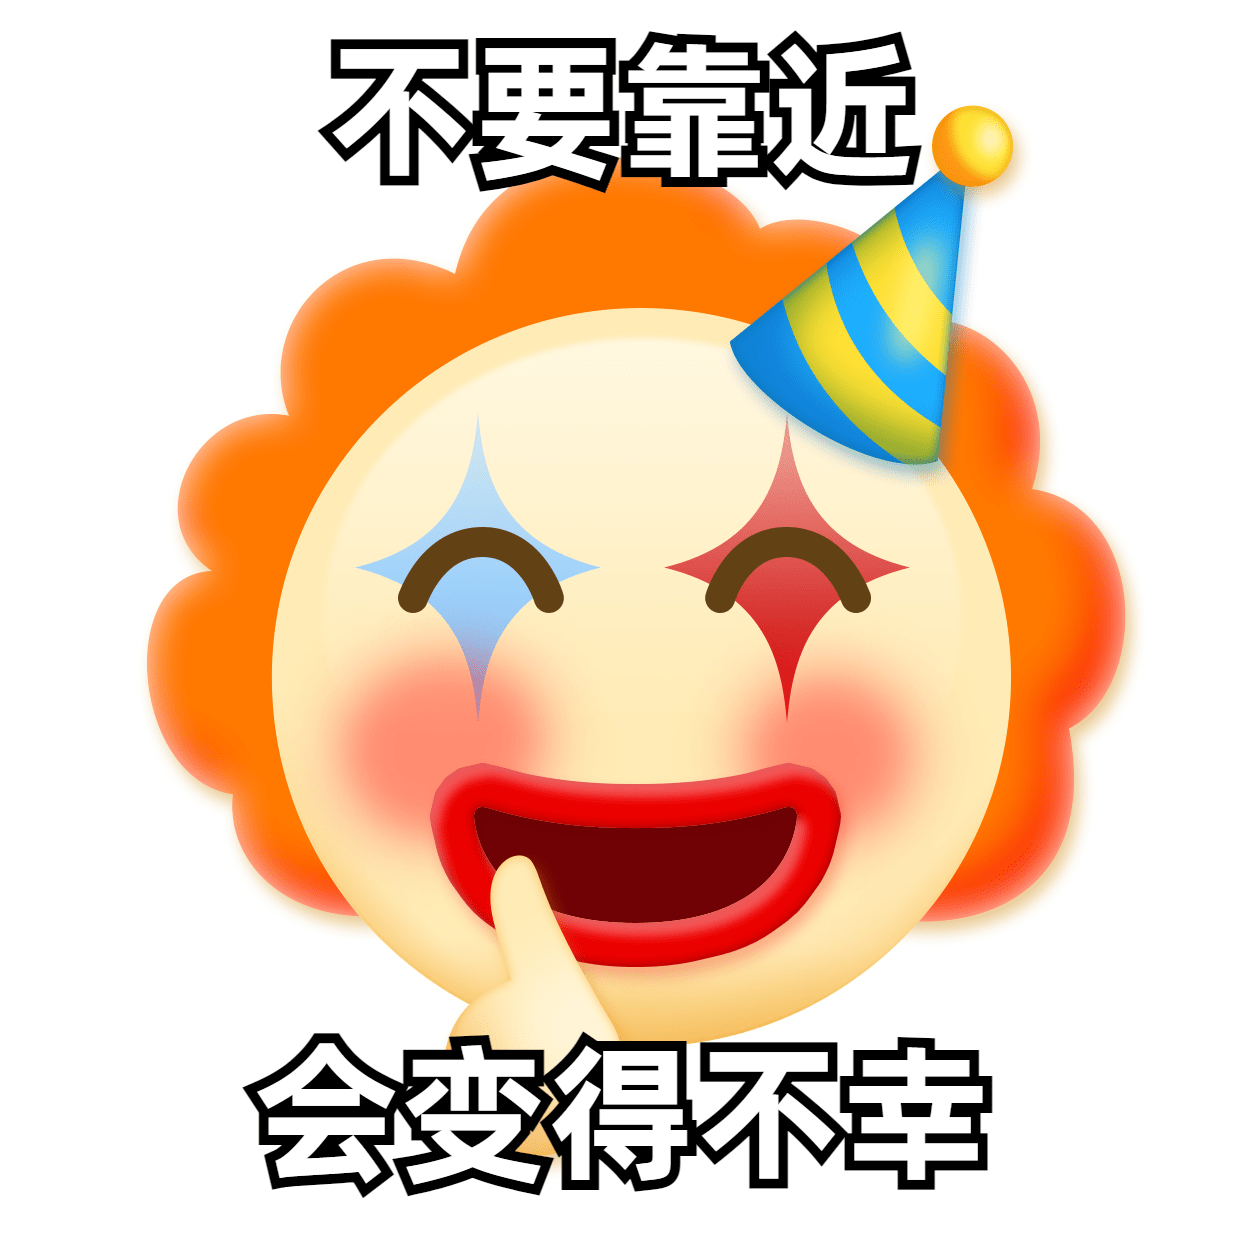 趣味小丑emoji头像表情包预览效果